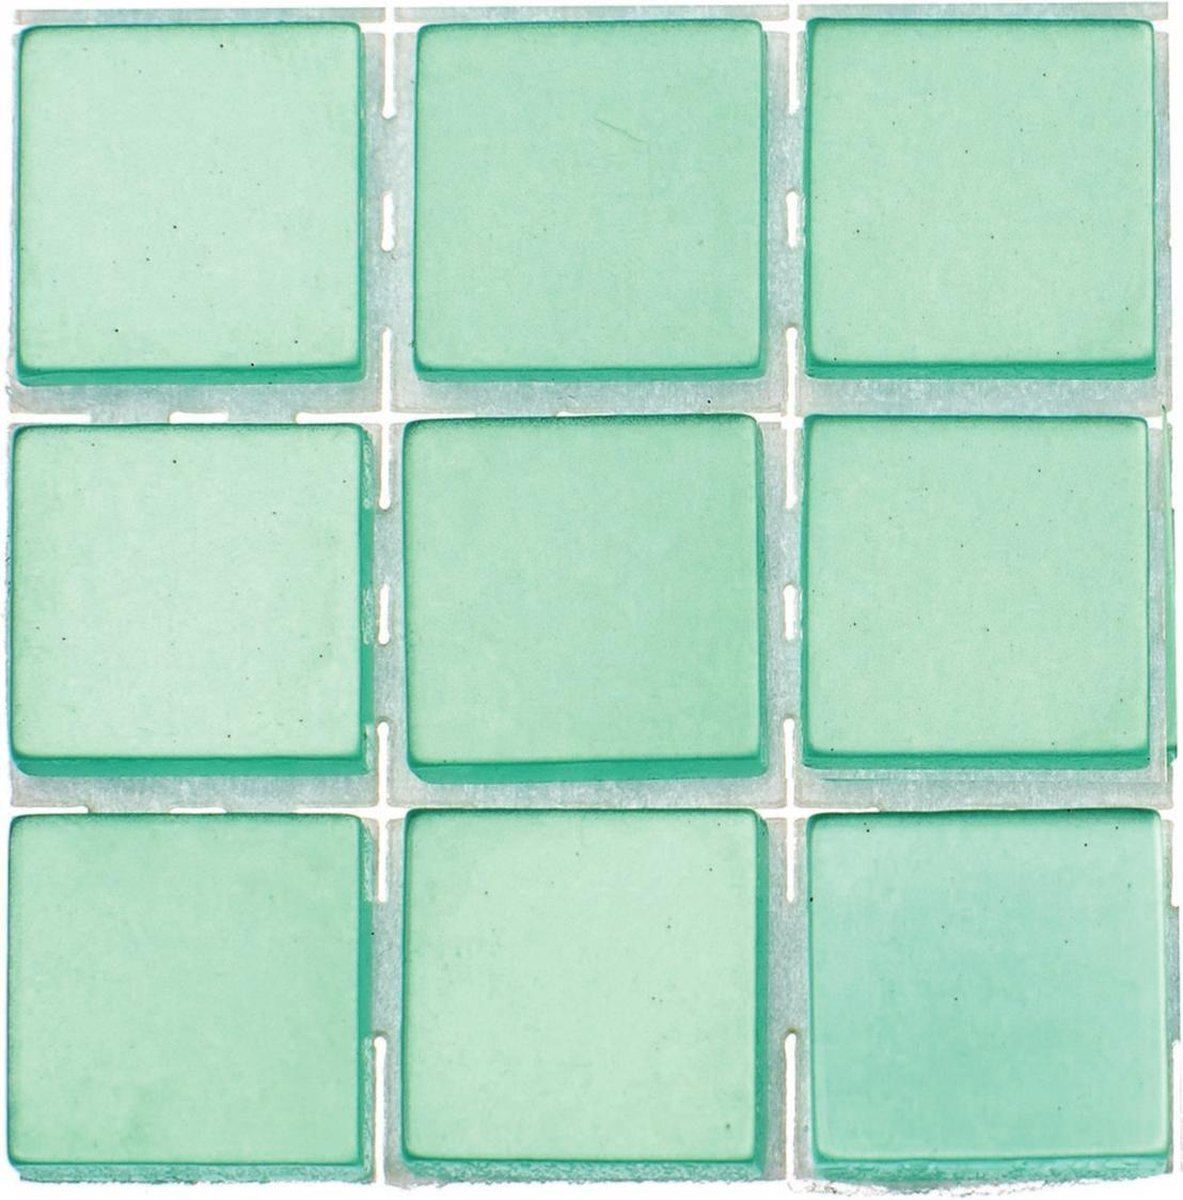 Glorex Hobby 504x stuks mozaieken maken steentjes/tegels kleur turquoise met formaat 10 x 10 x 2 mm